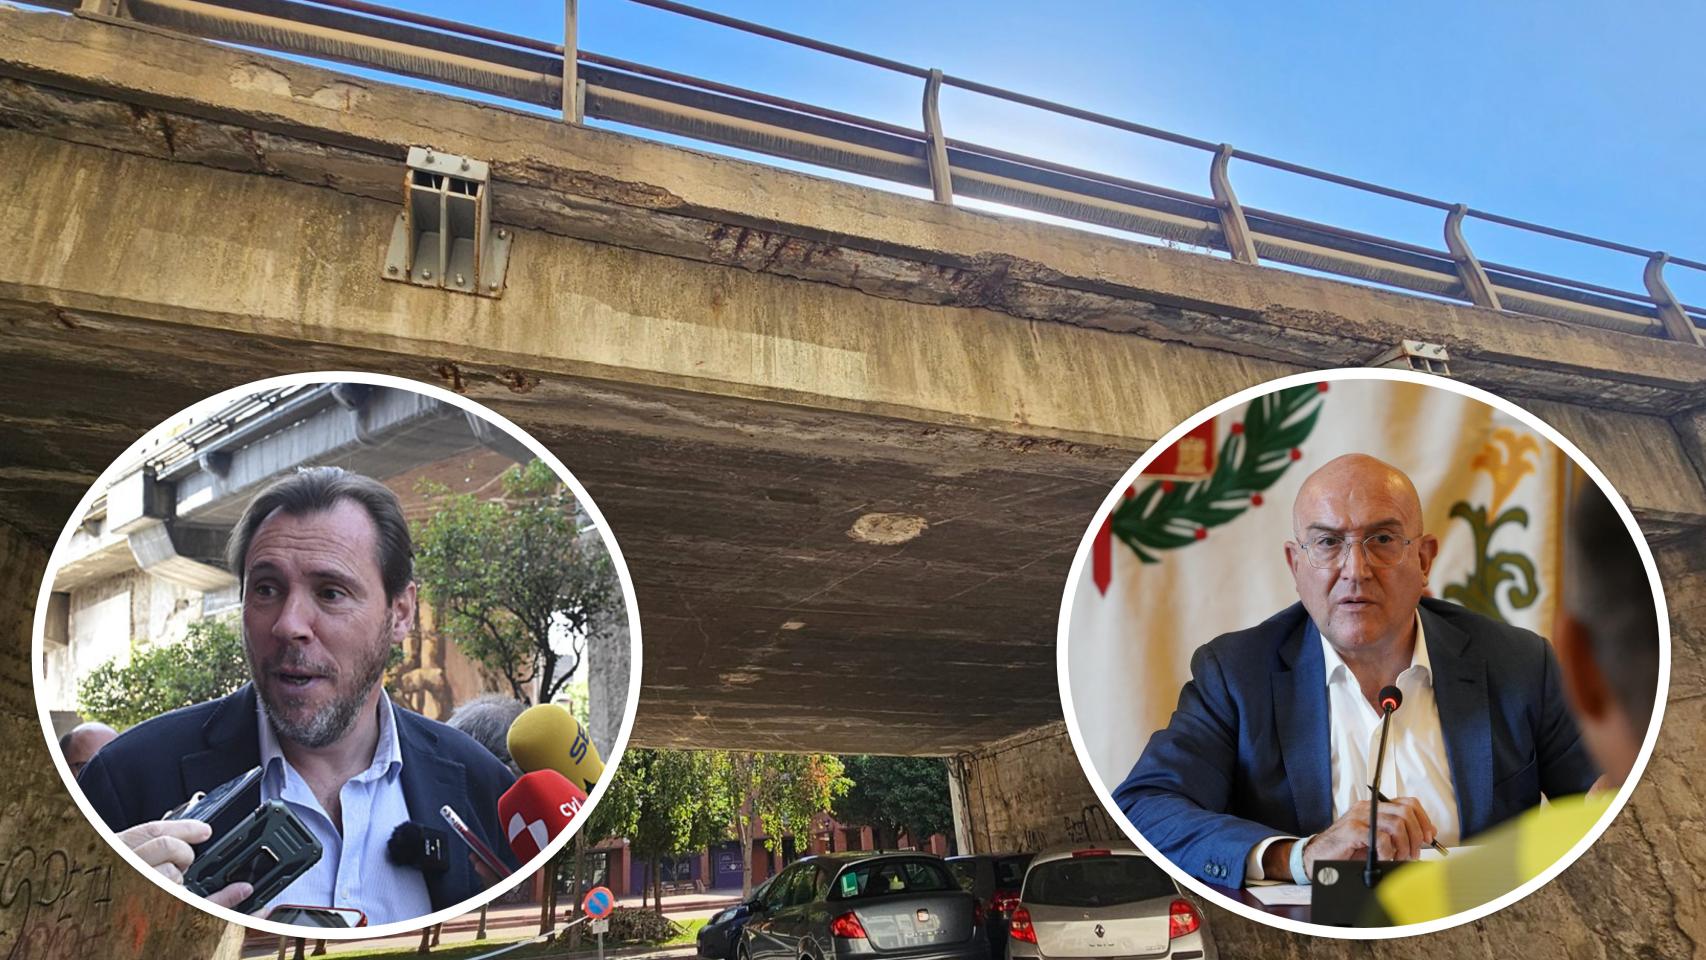 El viaducto de Arco de Ladrillo, Óscar Puente (Izq) y Jesús Julio Carnero (Drch)